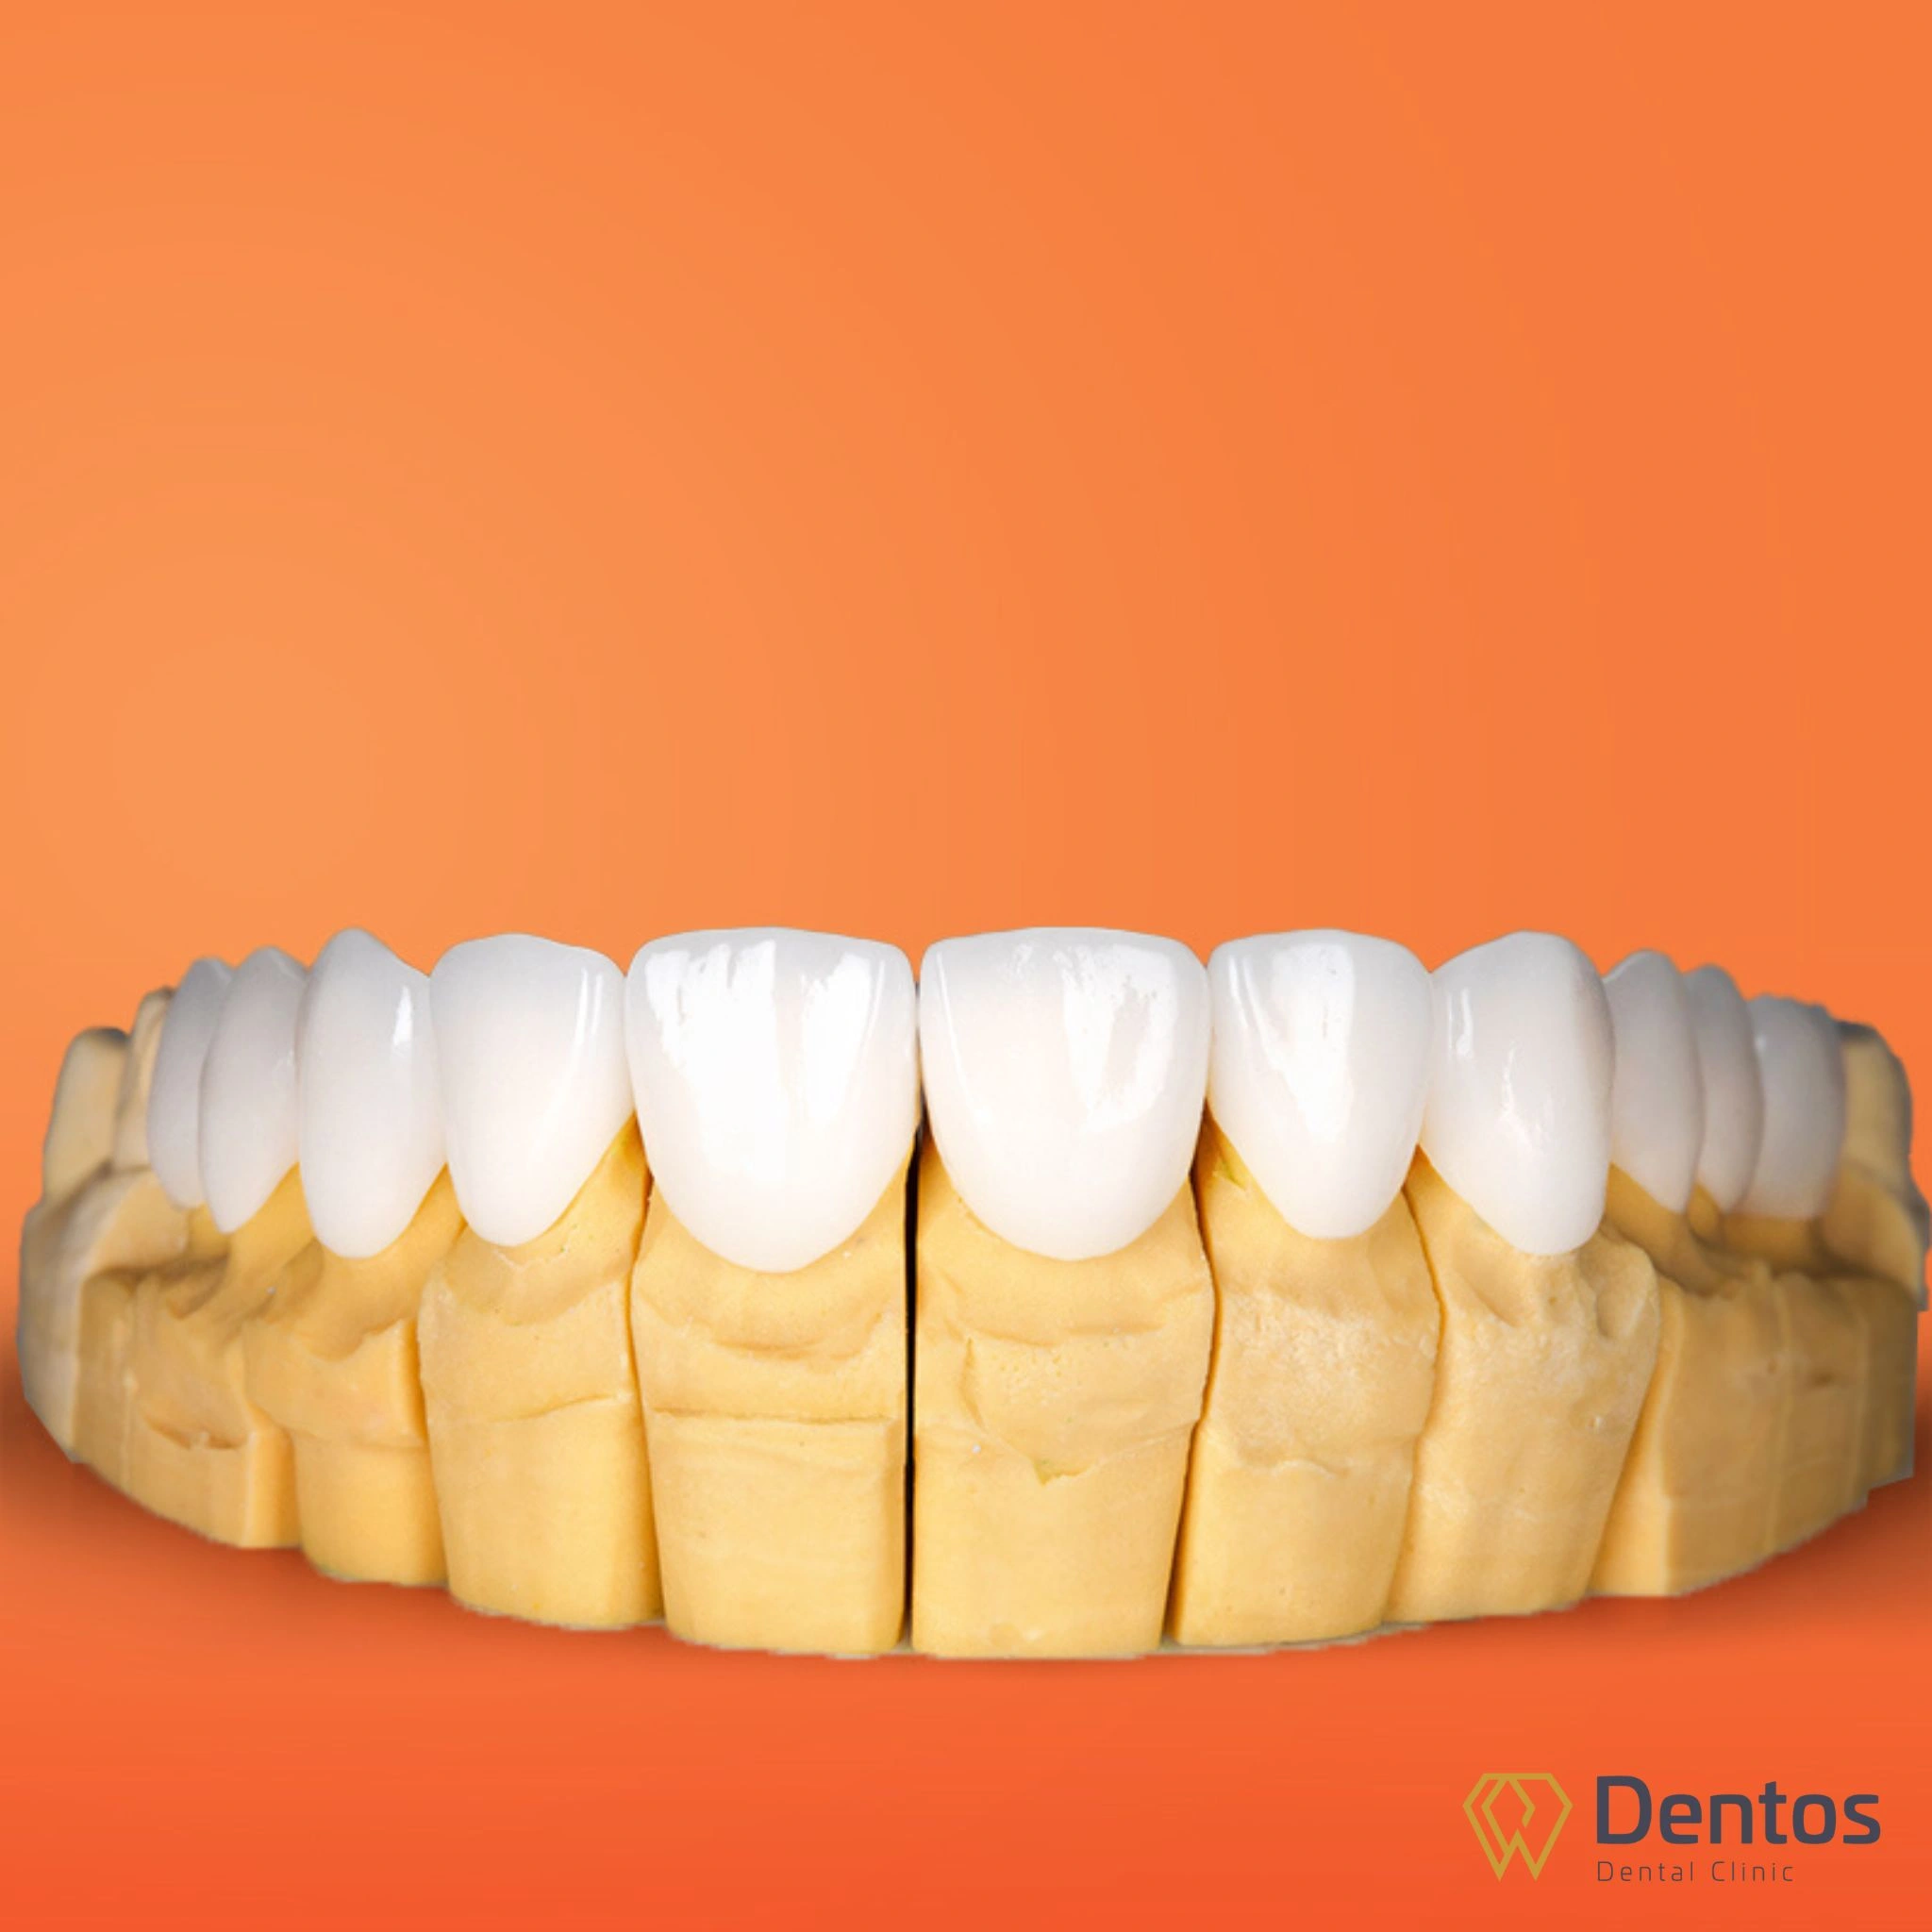 Răng sứ Zirconia Đức là sản phẩm được người tiêu dùng ưa chuộng hơn cả bởi chất lượng vượt trội